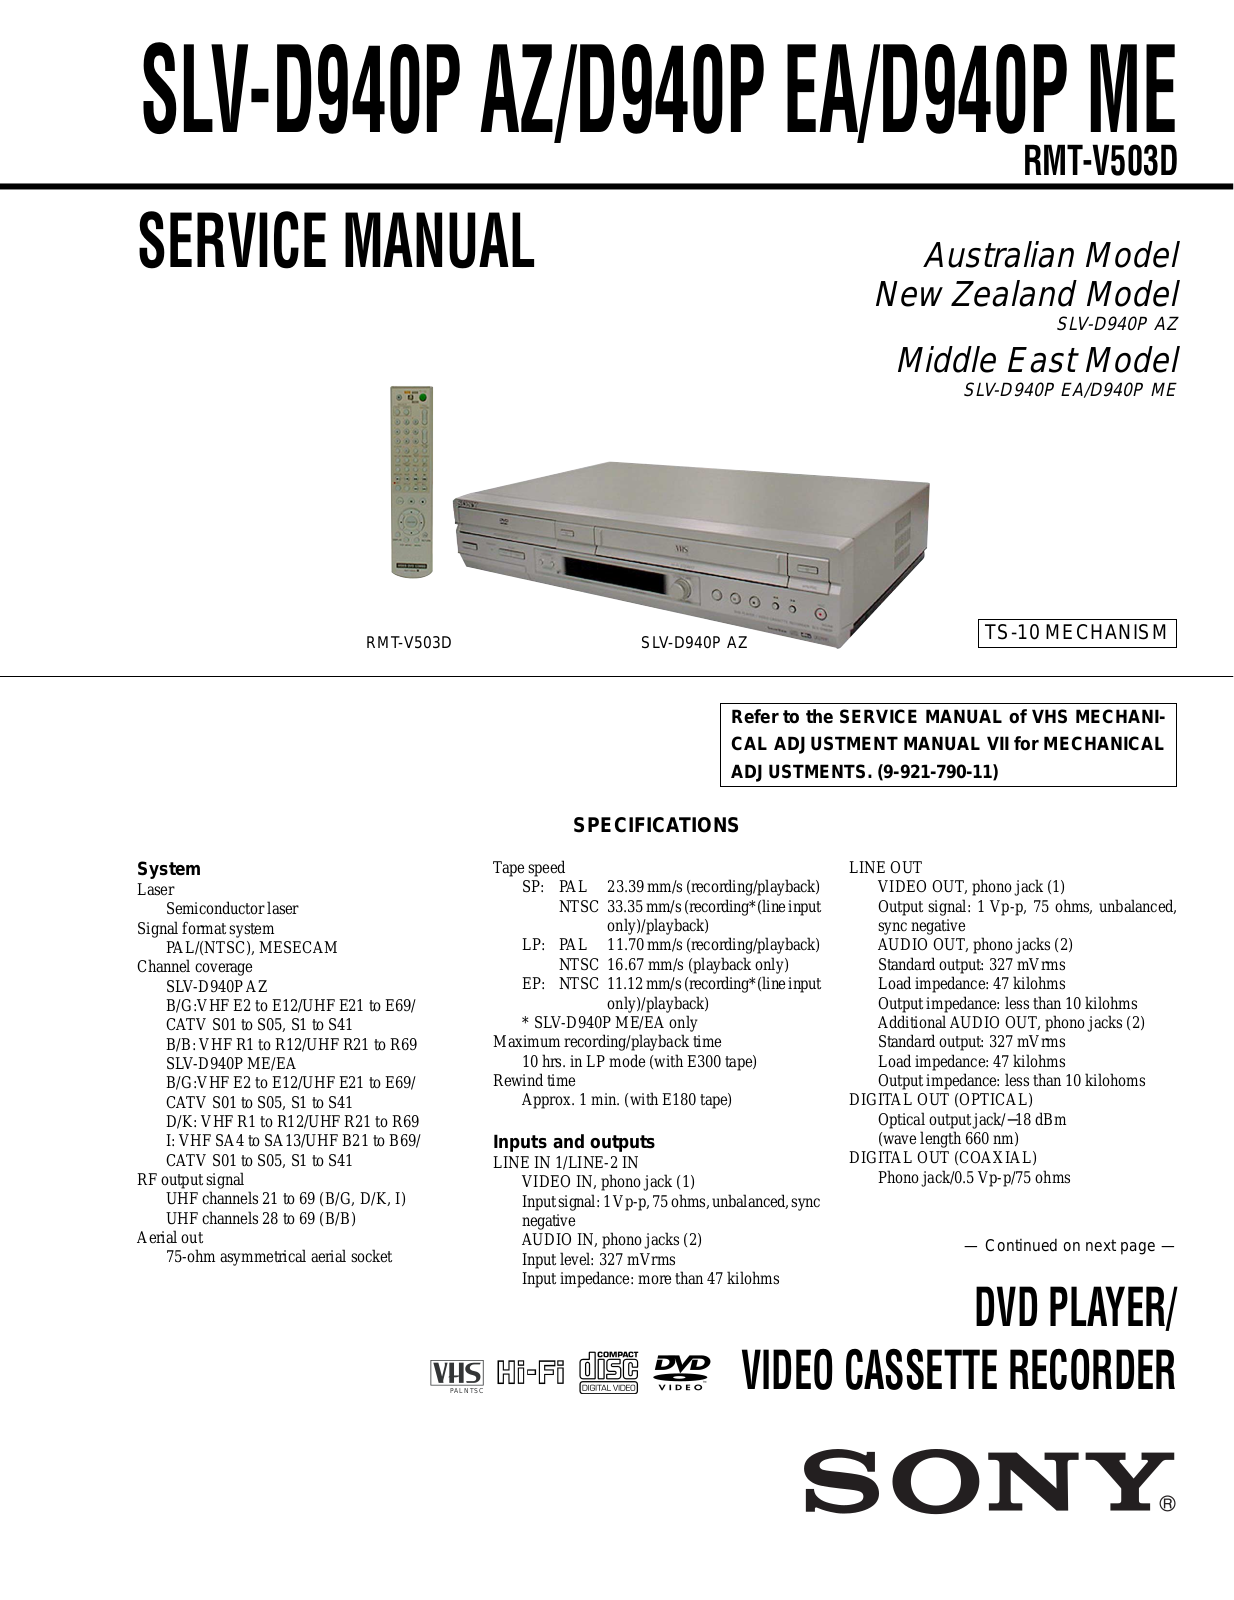 SONY SLV-D940P AZ, SLV-D940P EA, SLV-D940P ME Service Manual